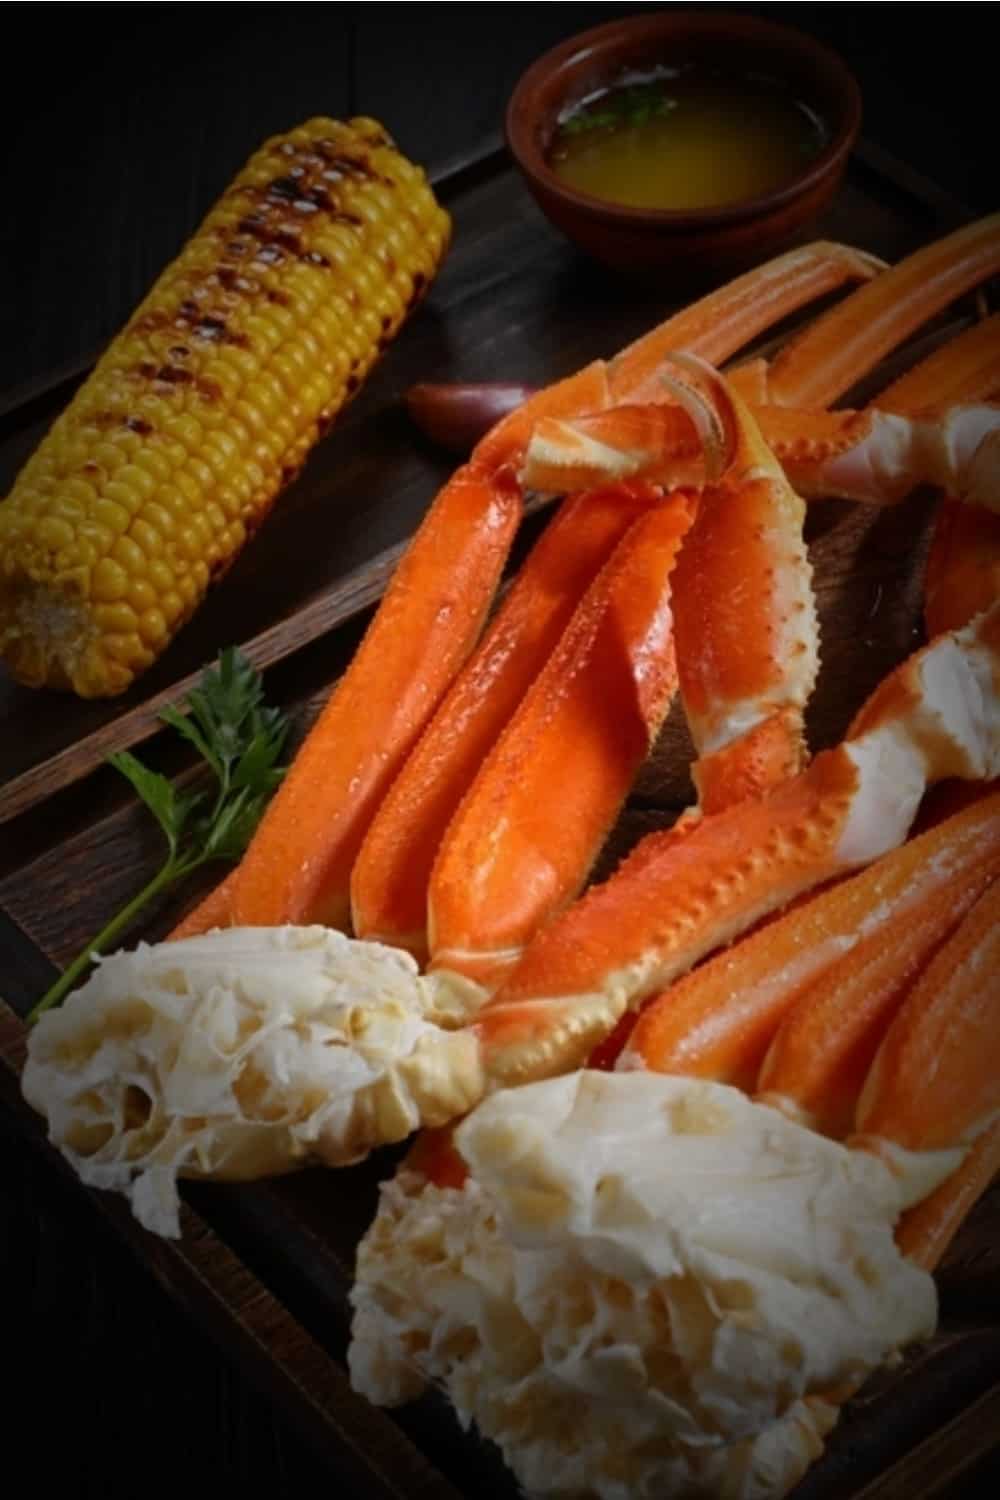 délicieux repas de crabe avec du maïs sur la table